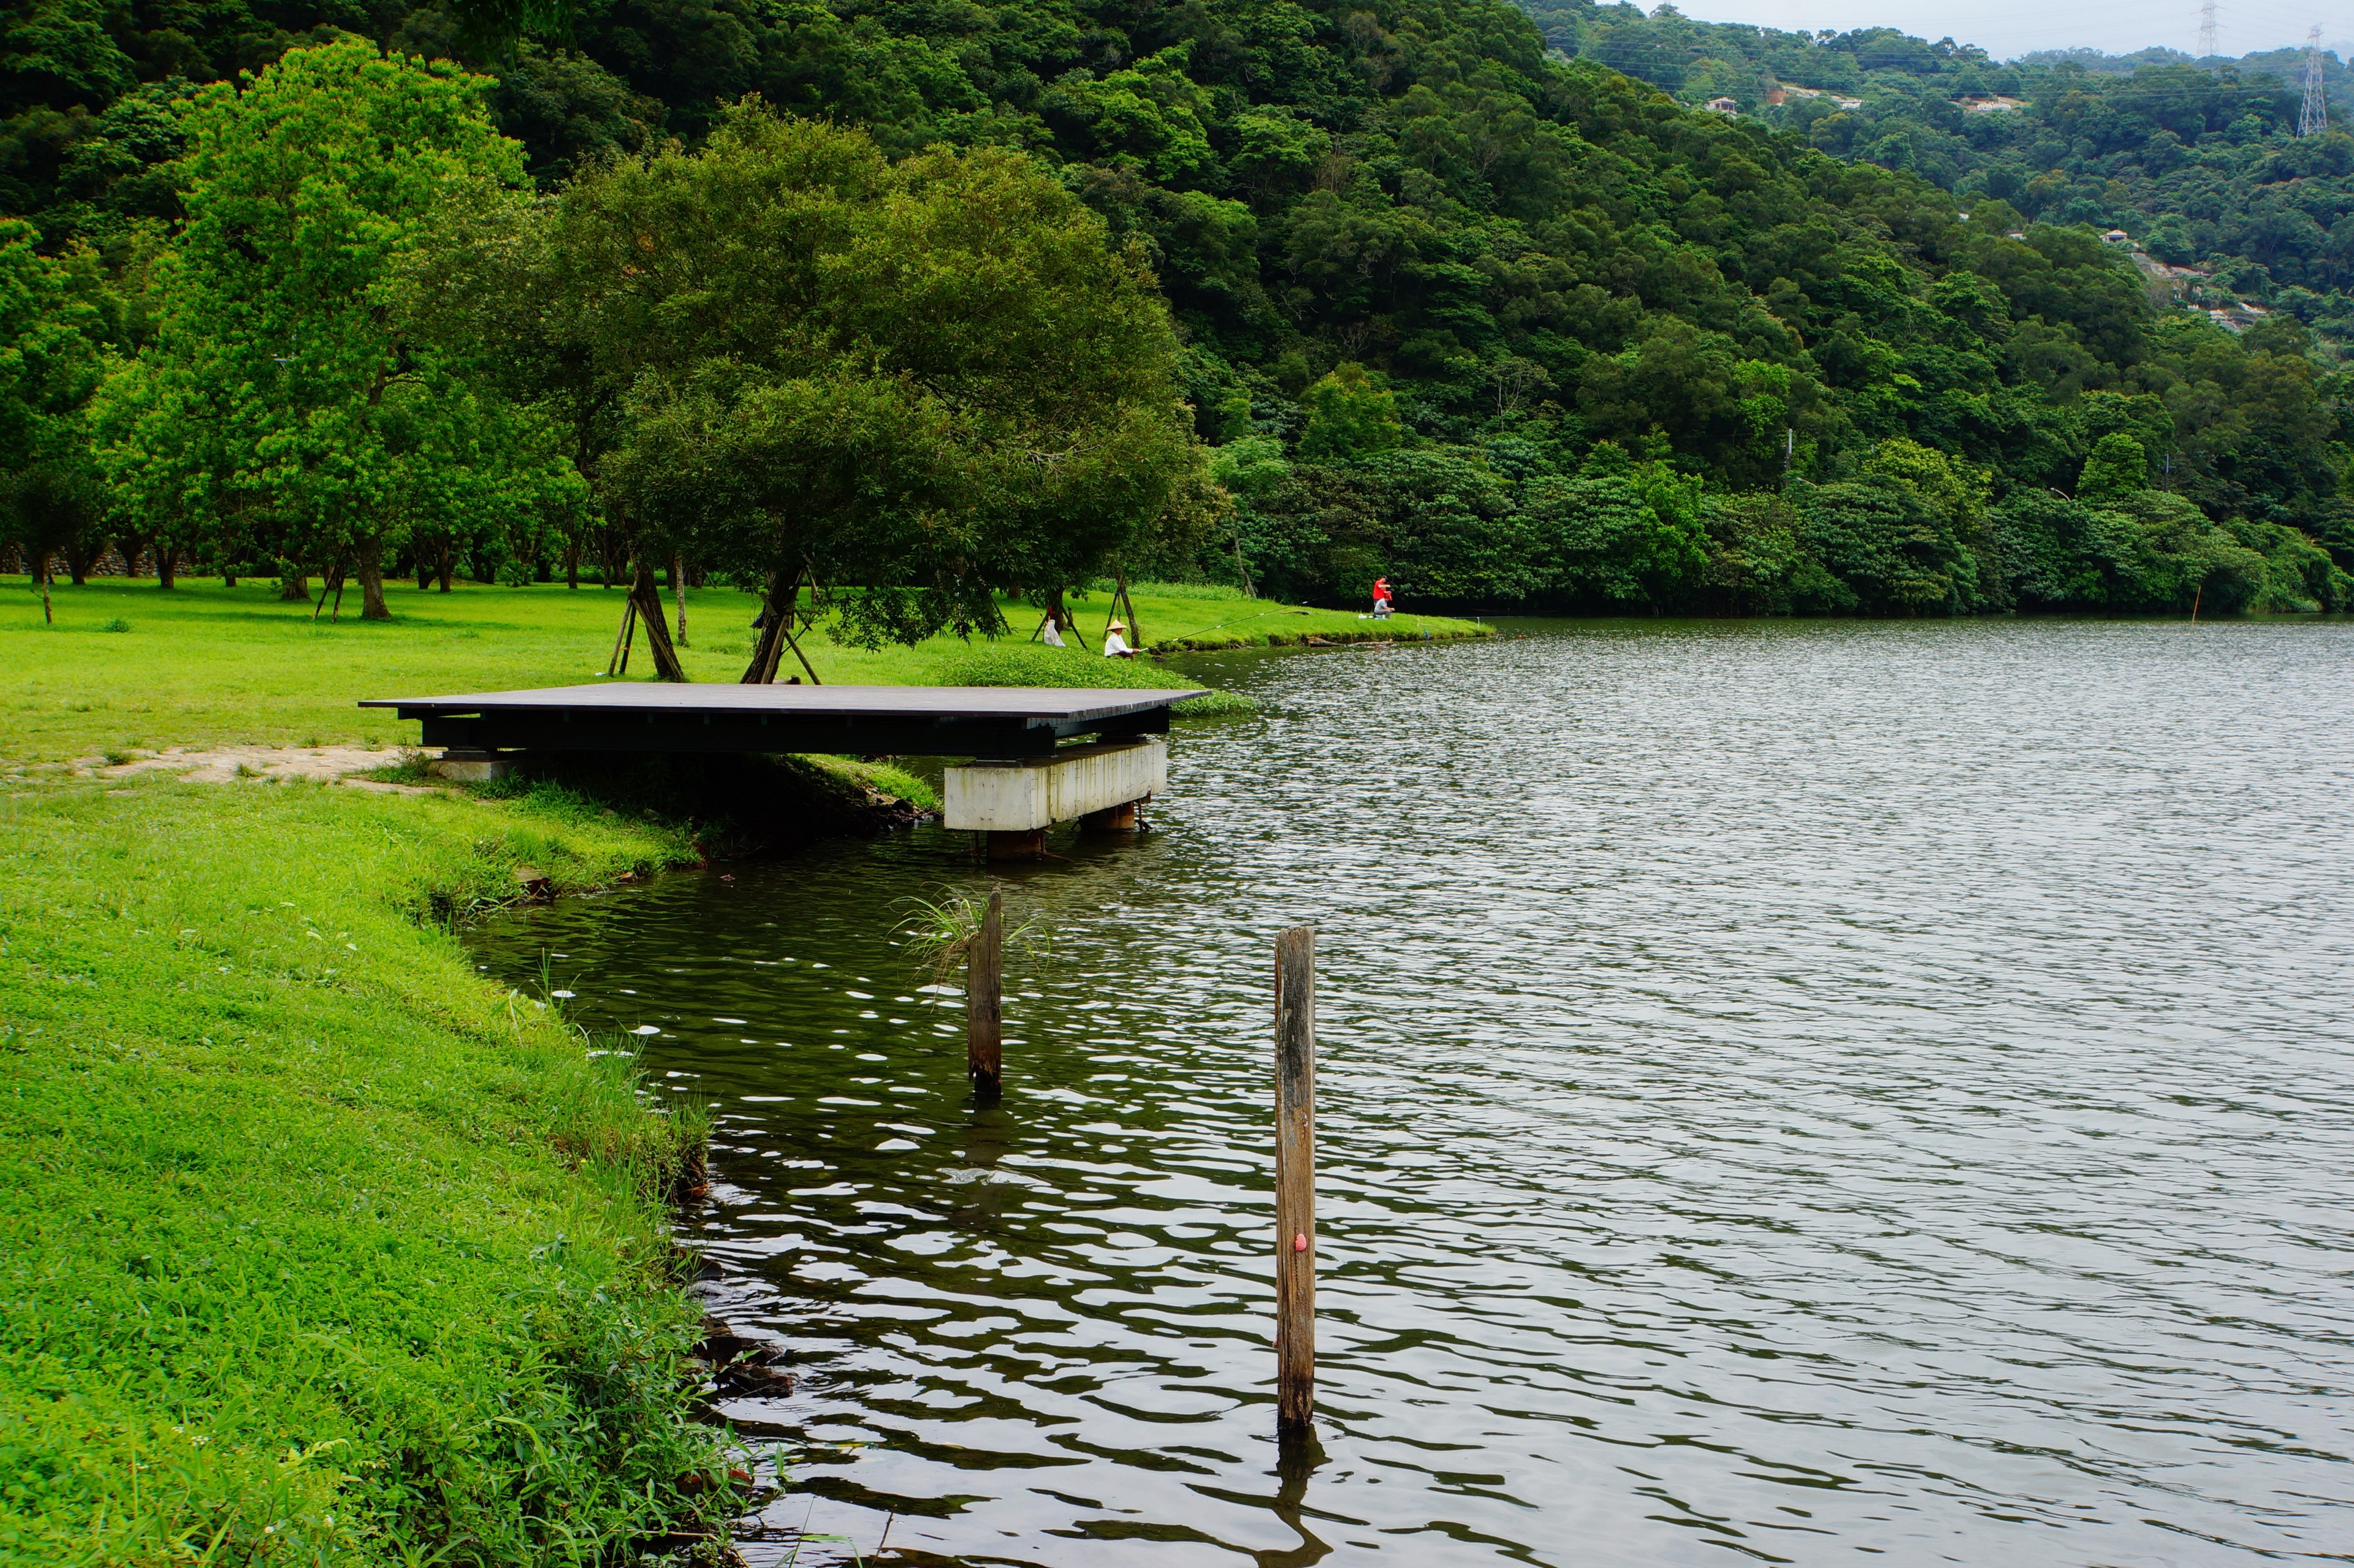 龍潭湖 Longtan Lake